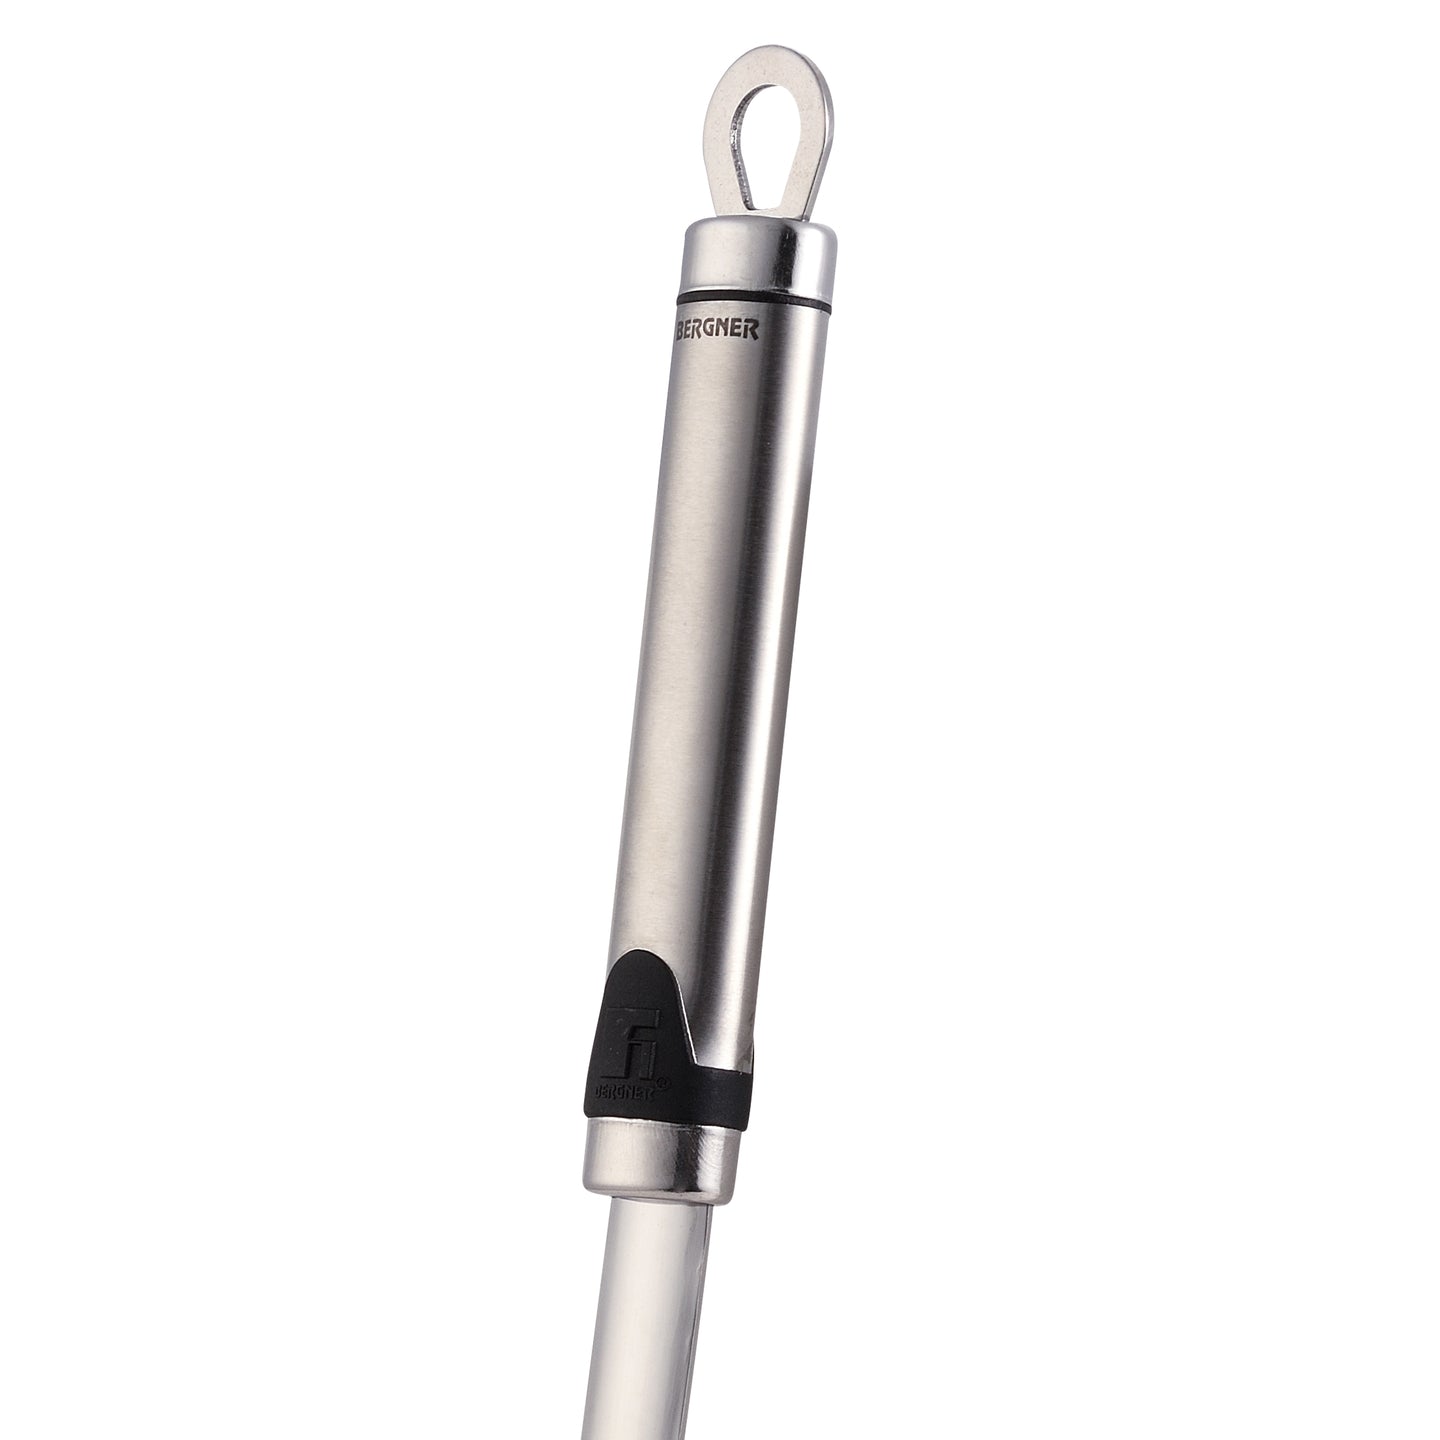 Tenedor trinchador Bergner 35 cm - Gizmo (1)